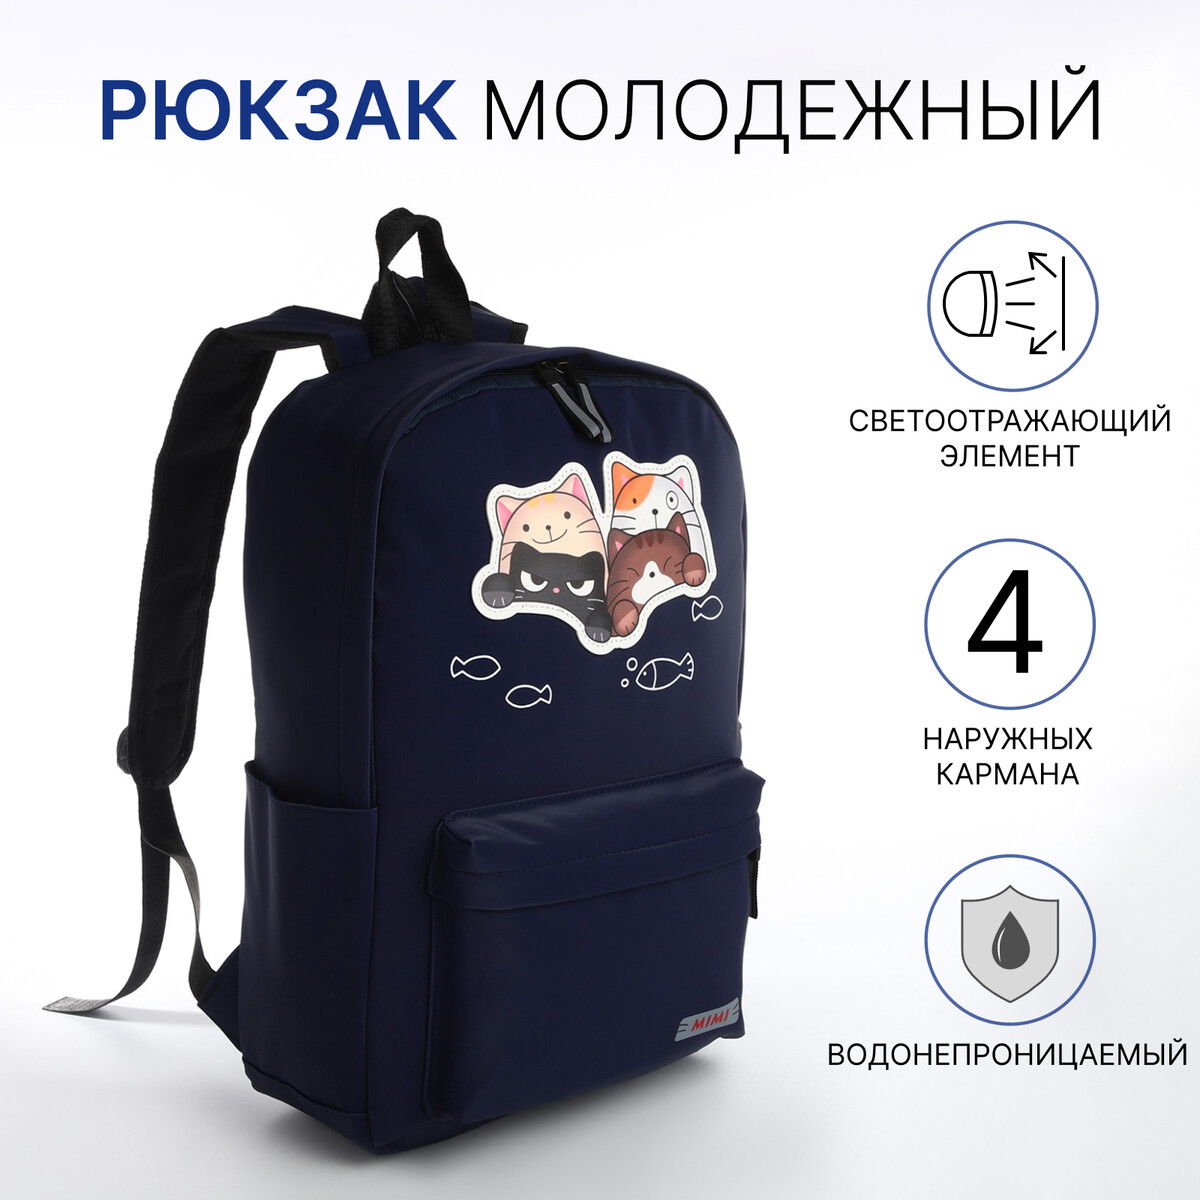 Рюкзак молодежный из текстиля на молнии, 4 кармана, цвет синий рюкзак сумка из текстиля на молнии 3 кармана отдел для ноутбука синий